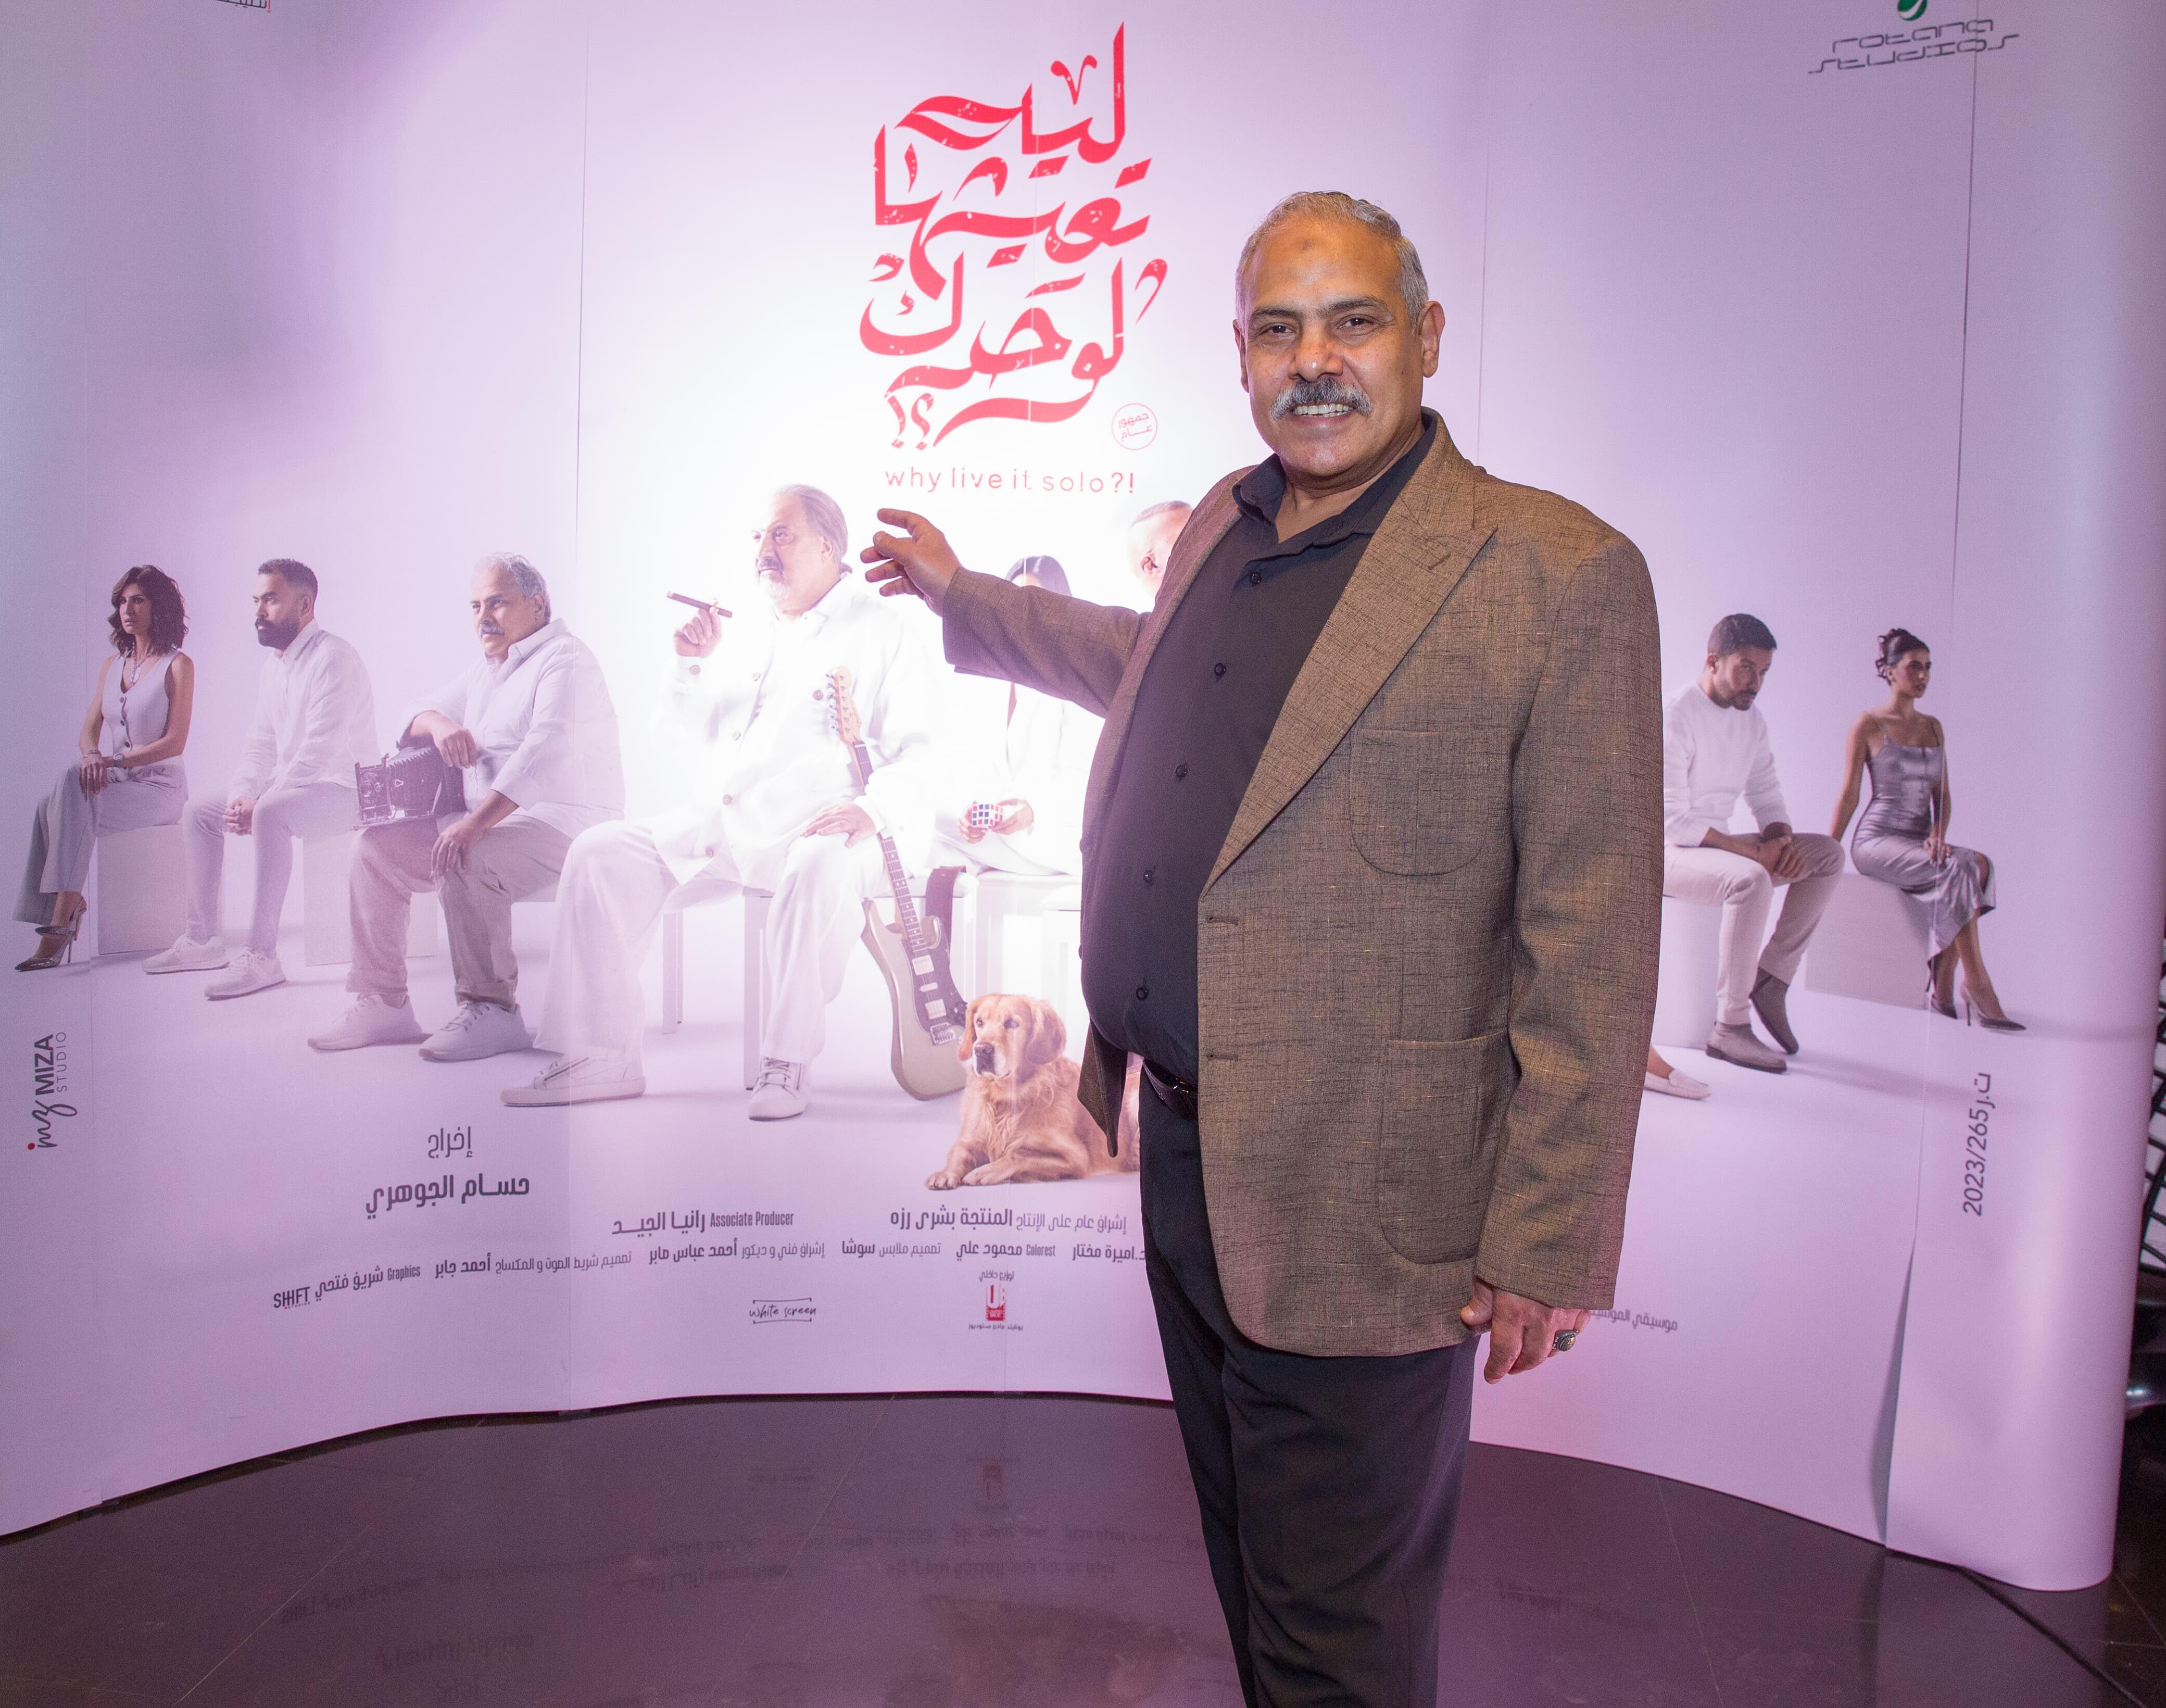 محمد رضوان يحتفل بـ فيلم ليه تعيشها لوحدك